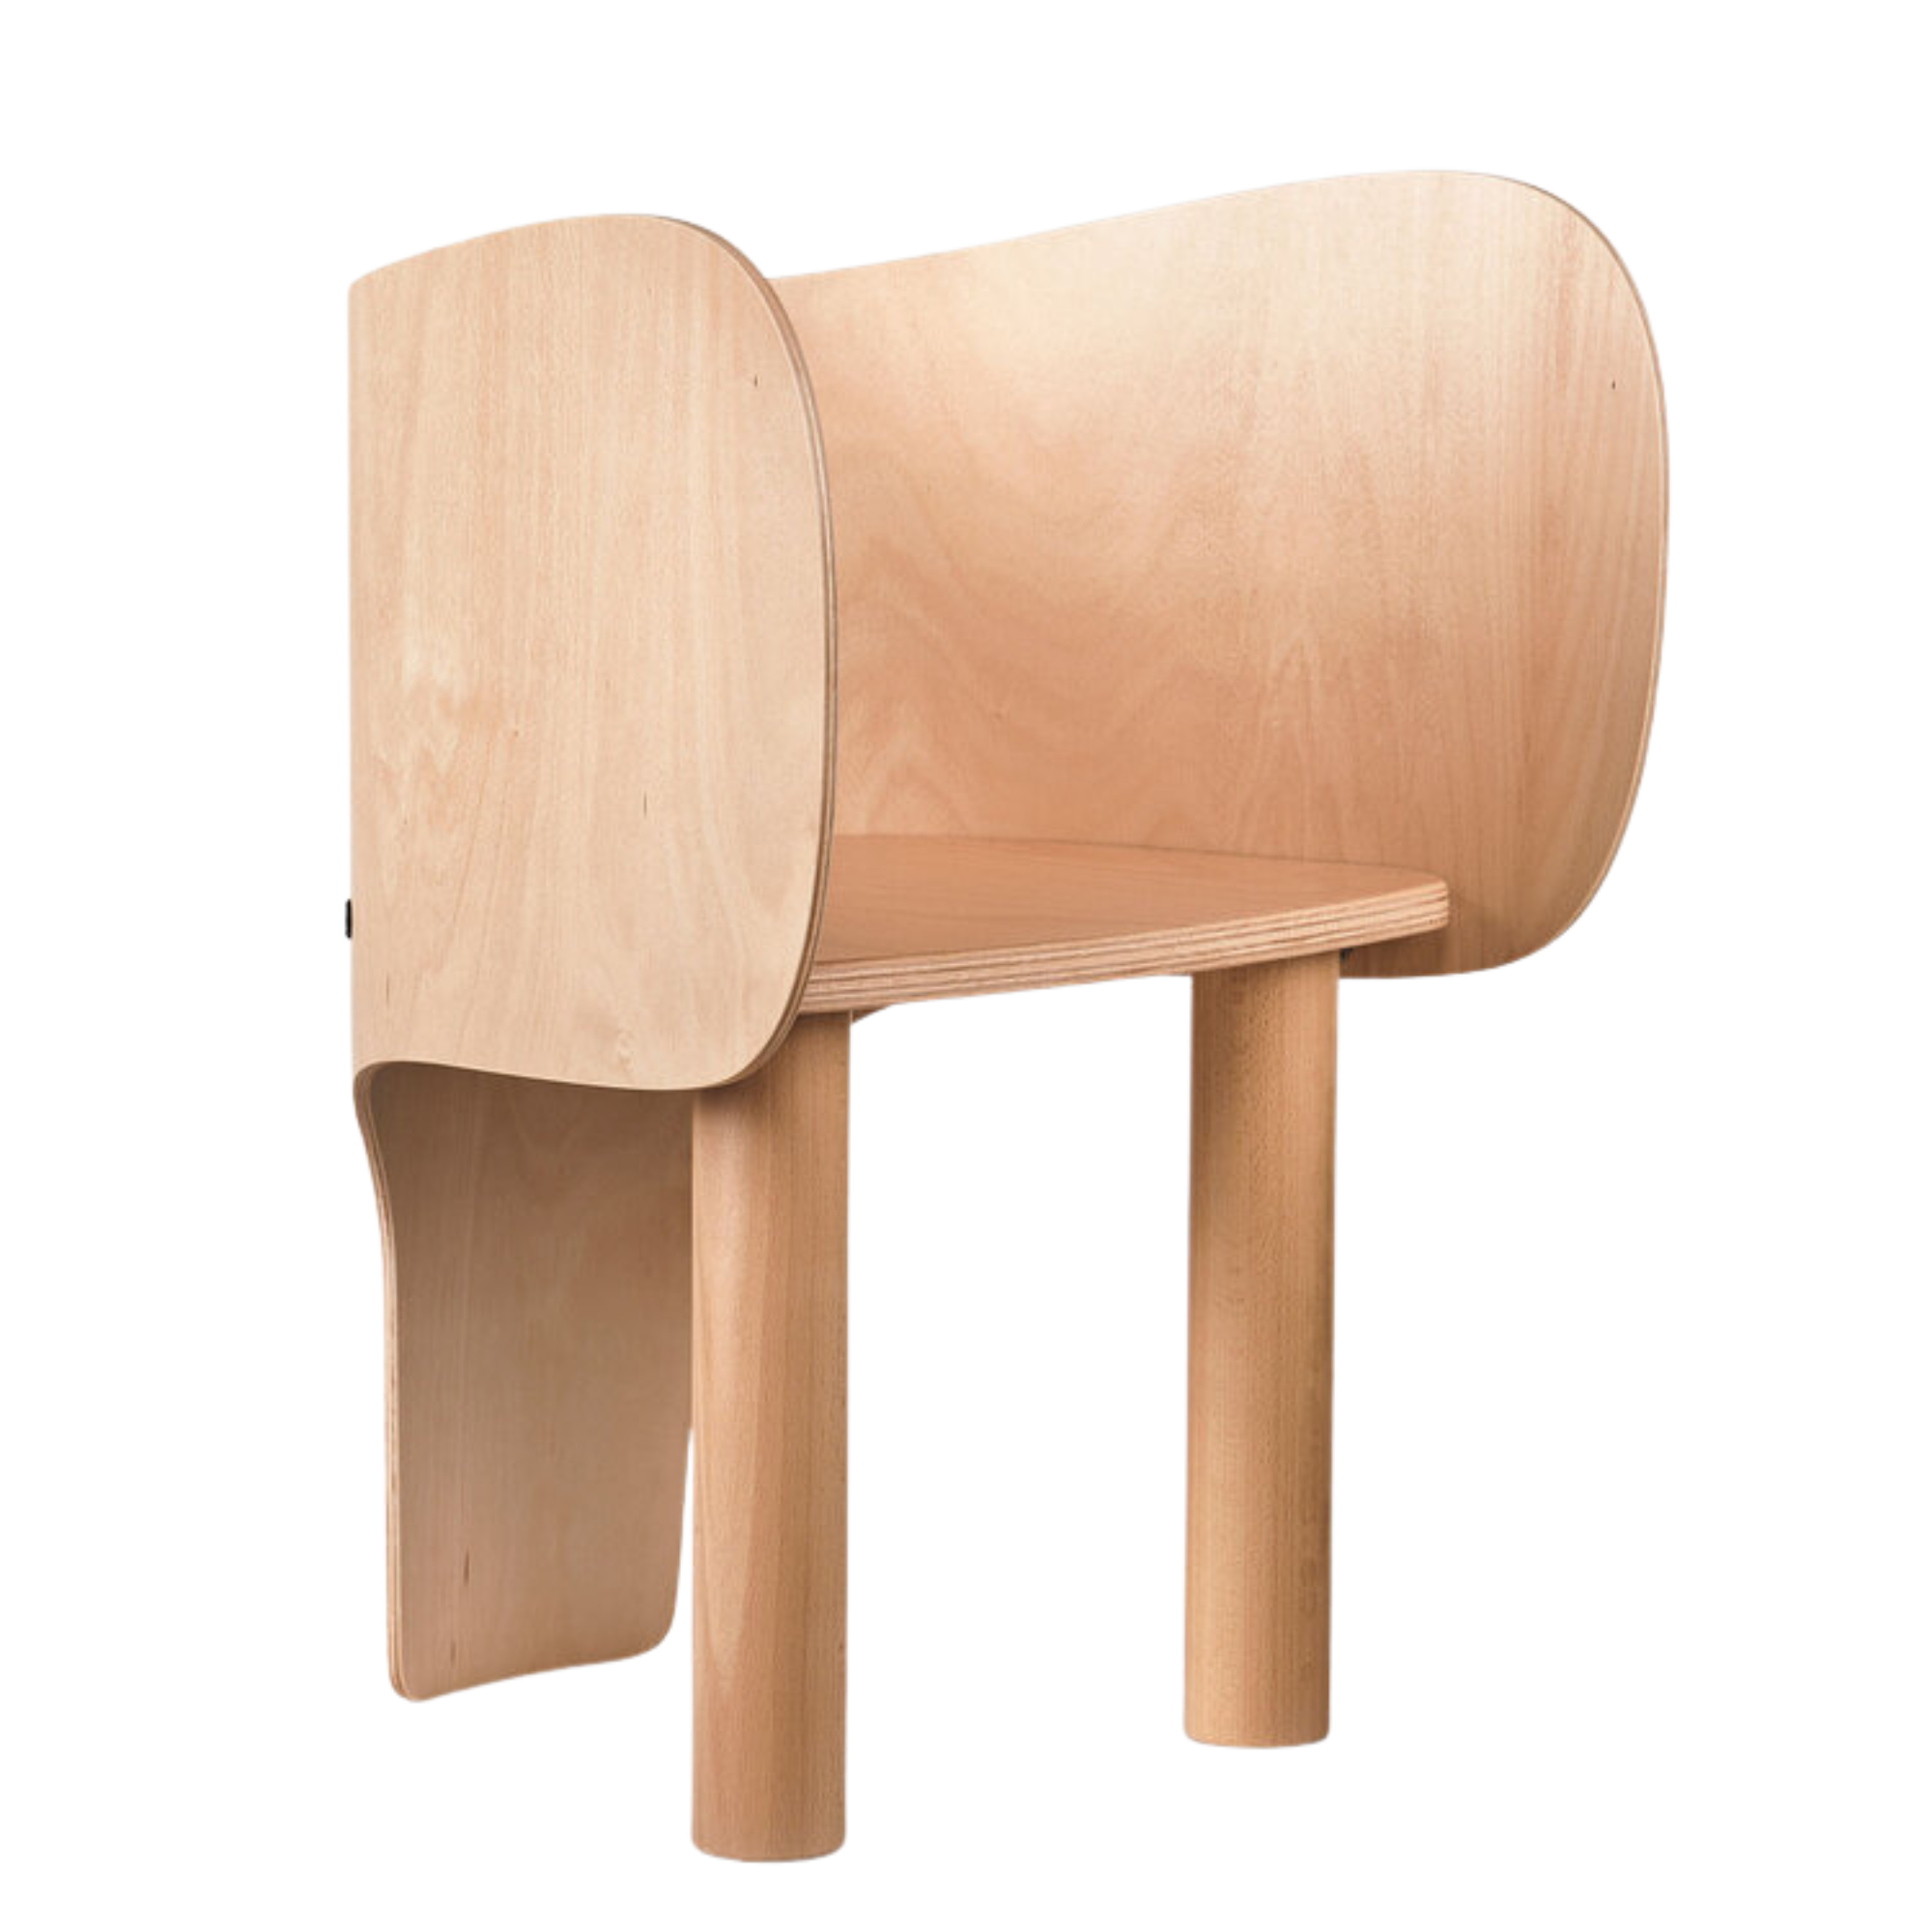 EO Elephant chair